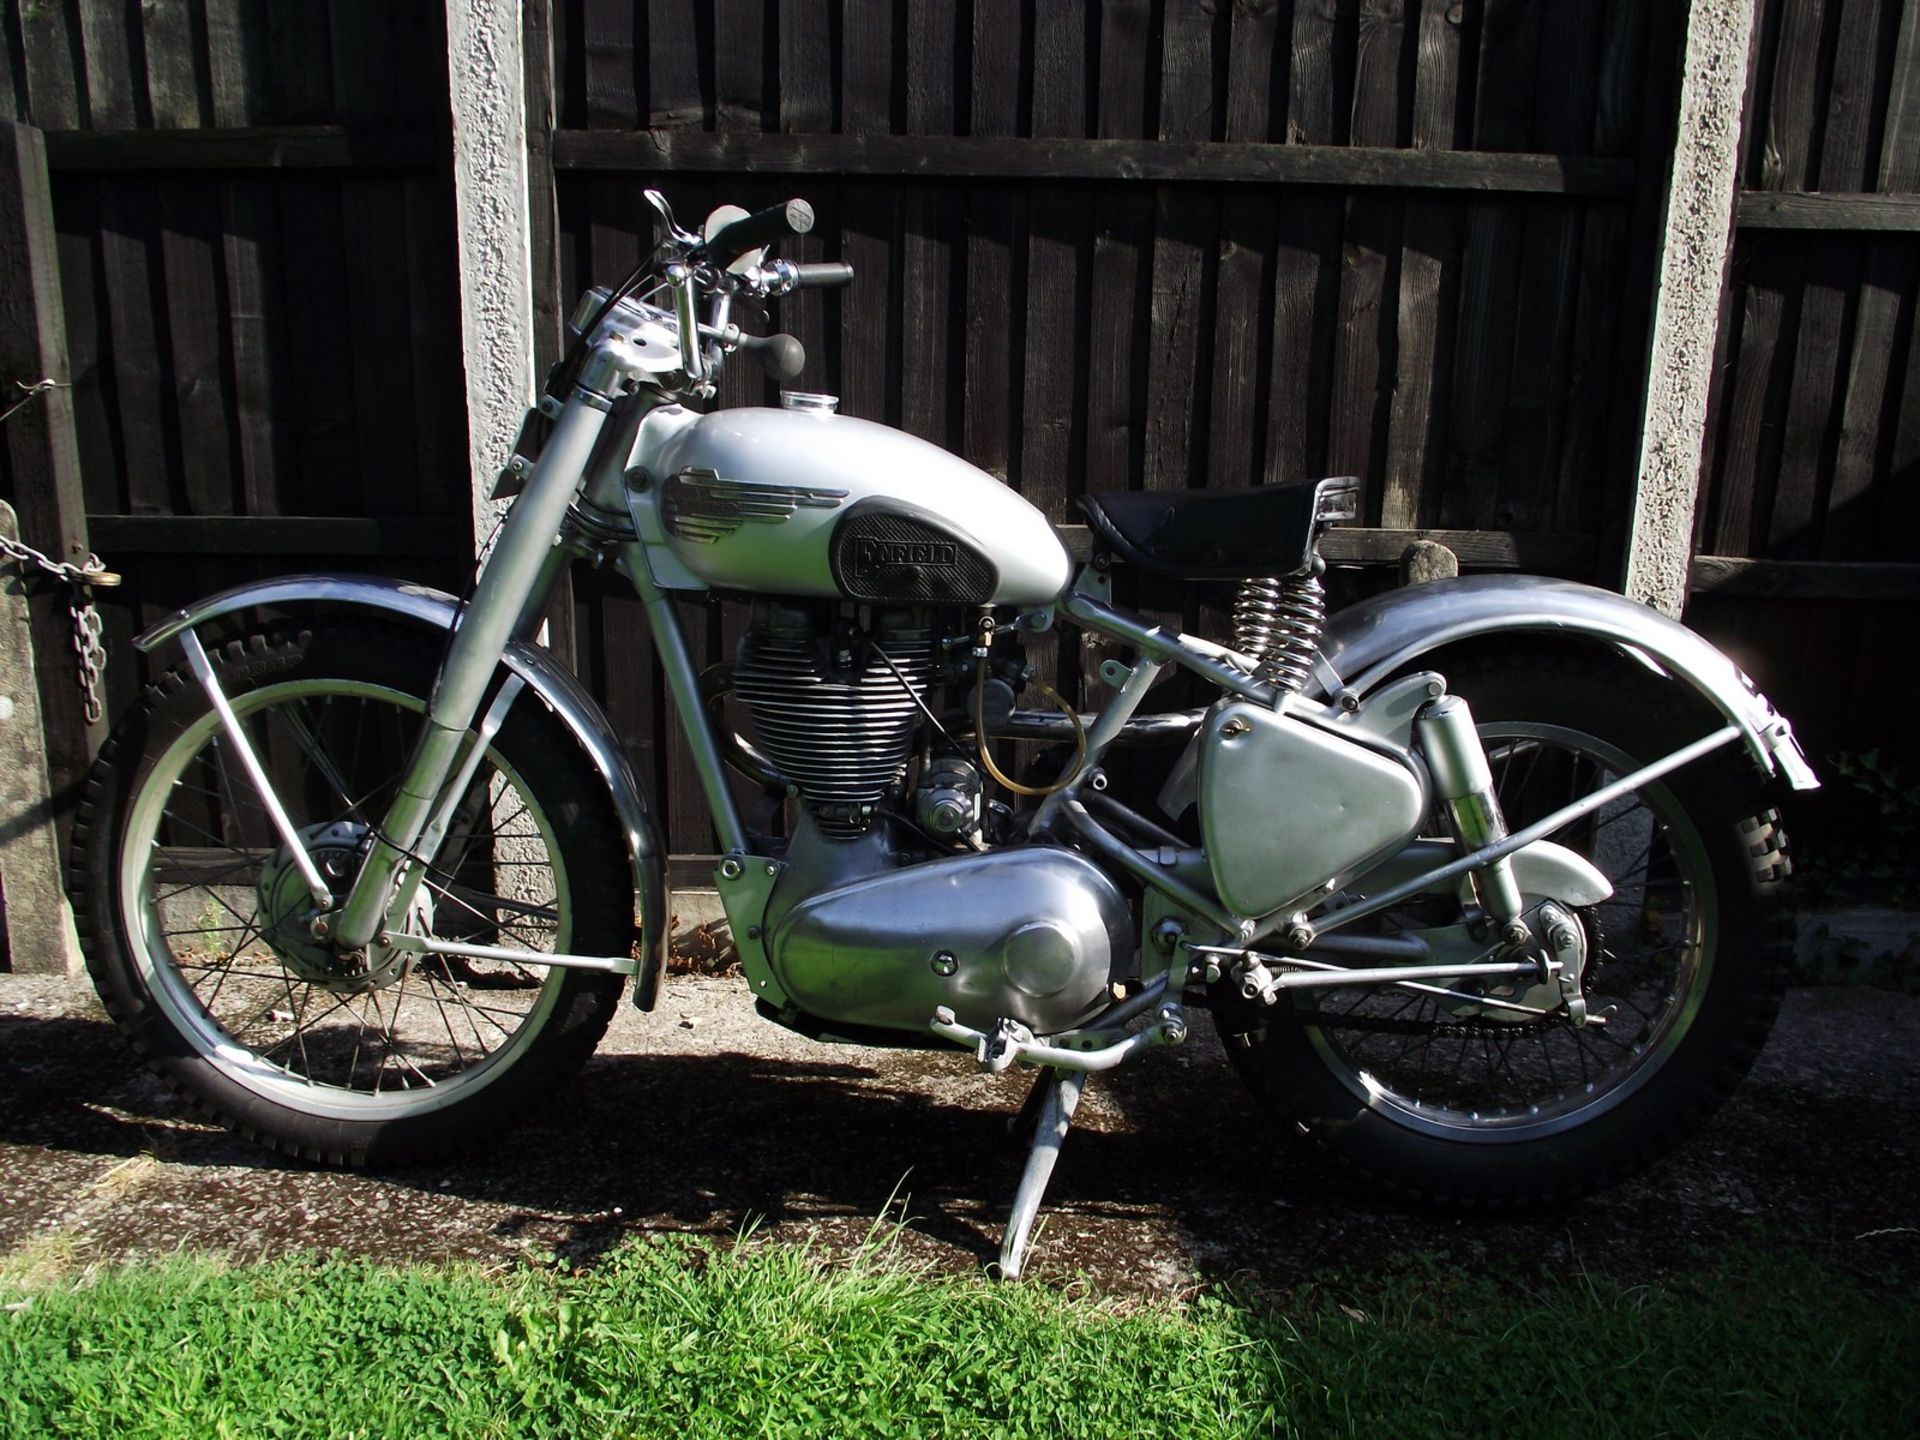 1954 Royal Enfield Trials Bullet Reg. no. 559 UXB Frame no. 34746 Engine no. JS14044 This motorcycle